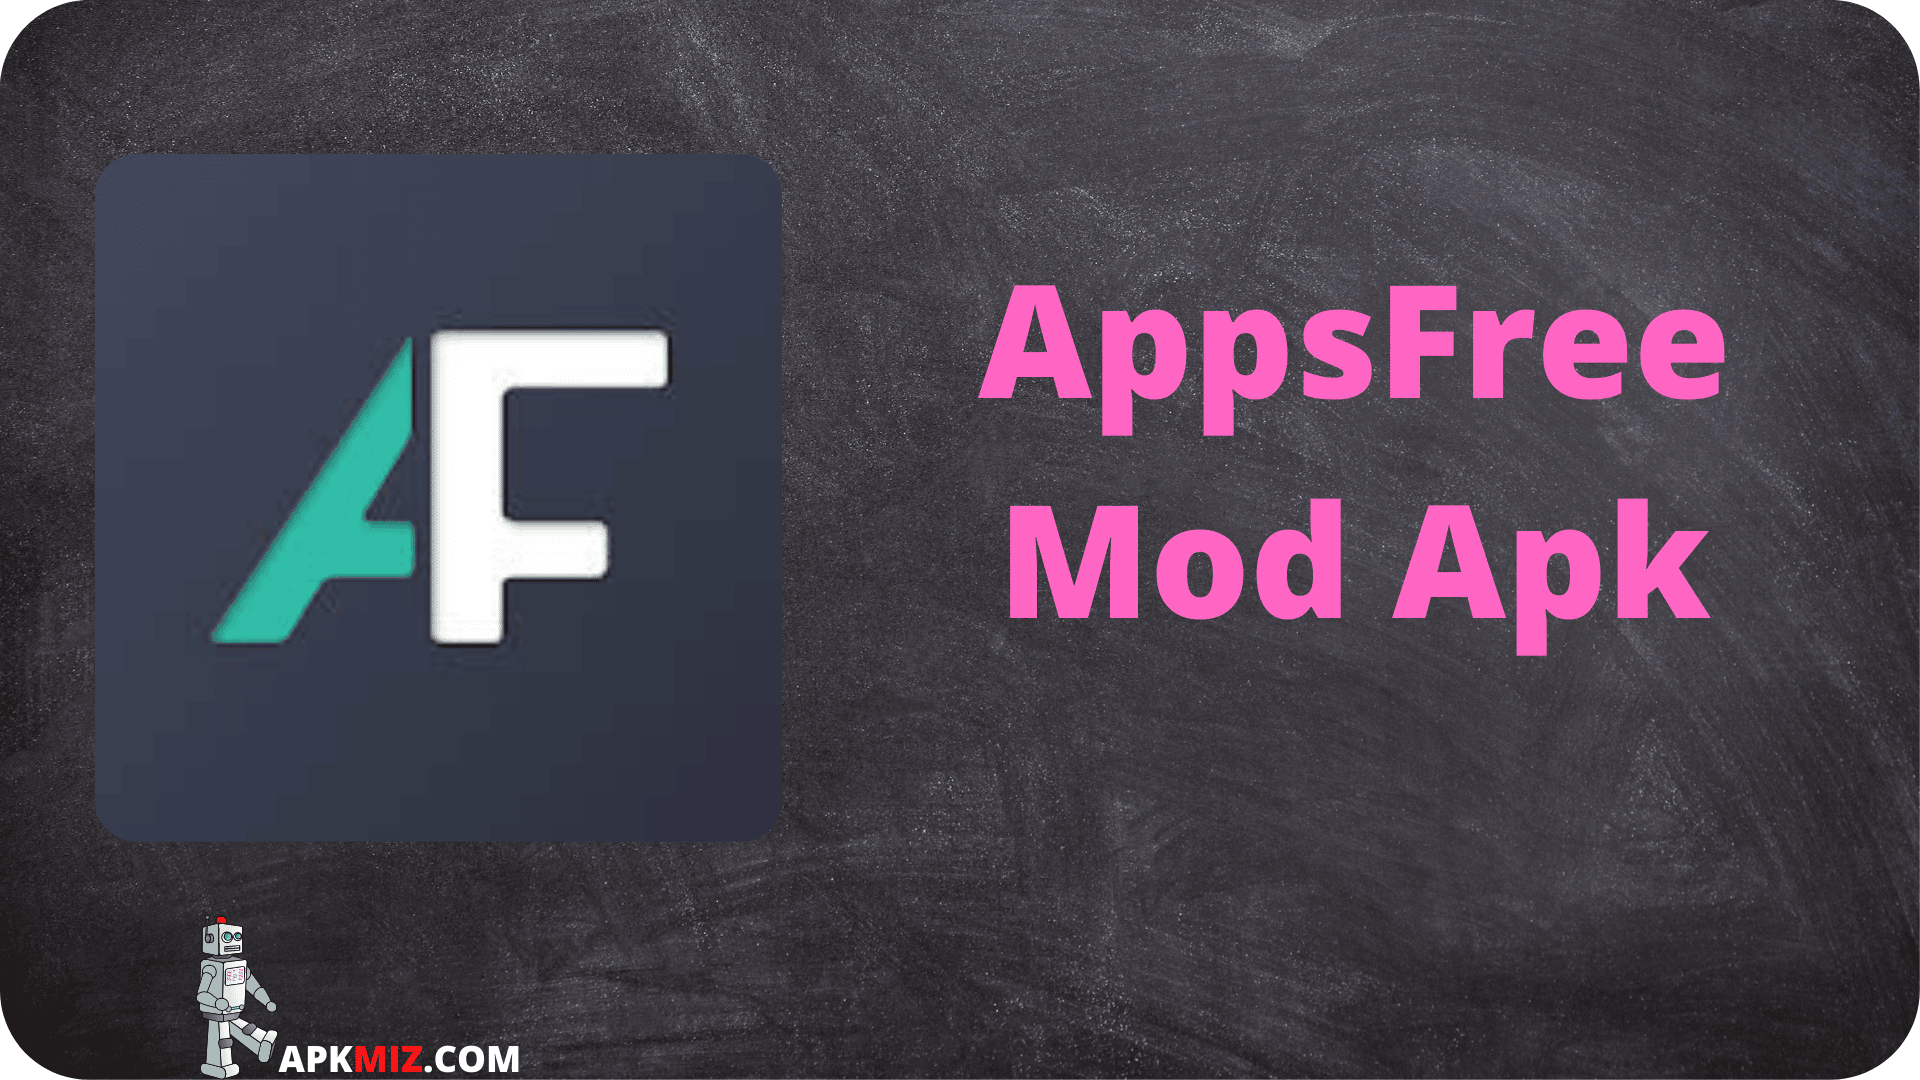 AppsFree Mod Apk